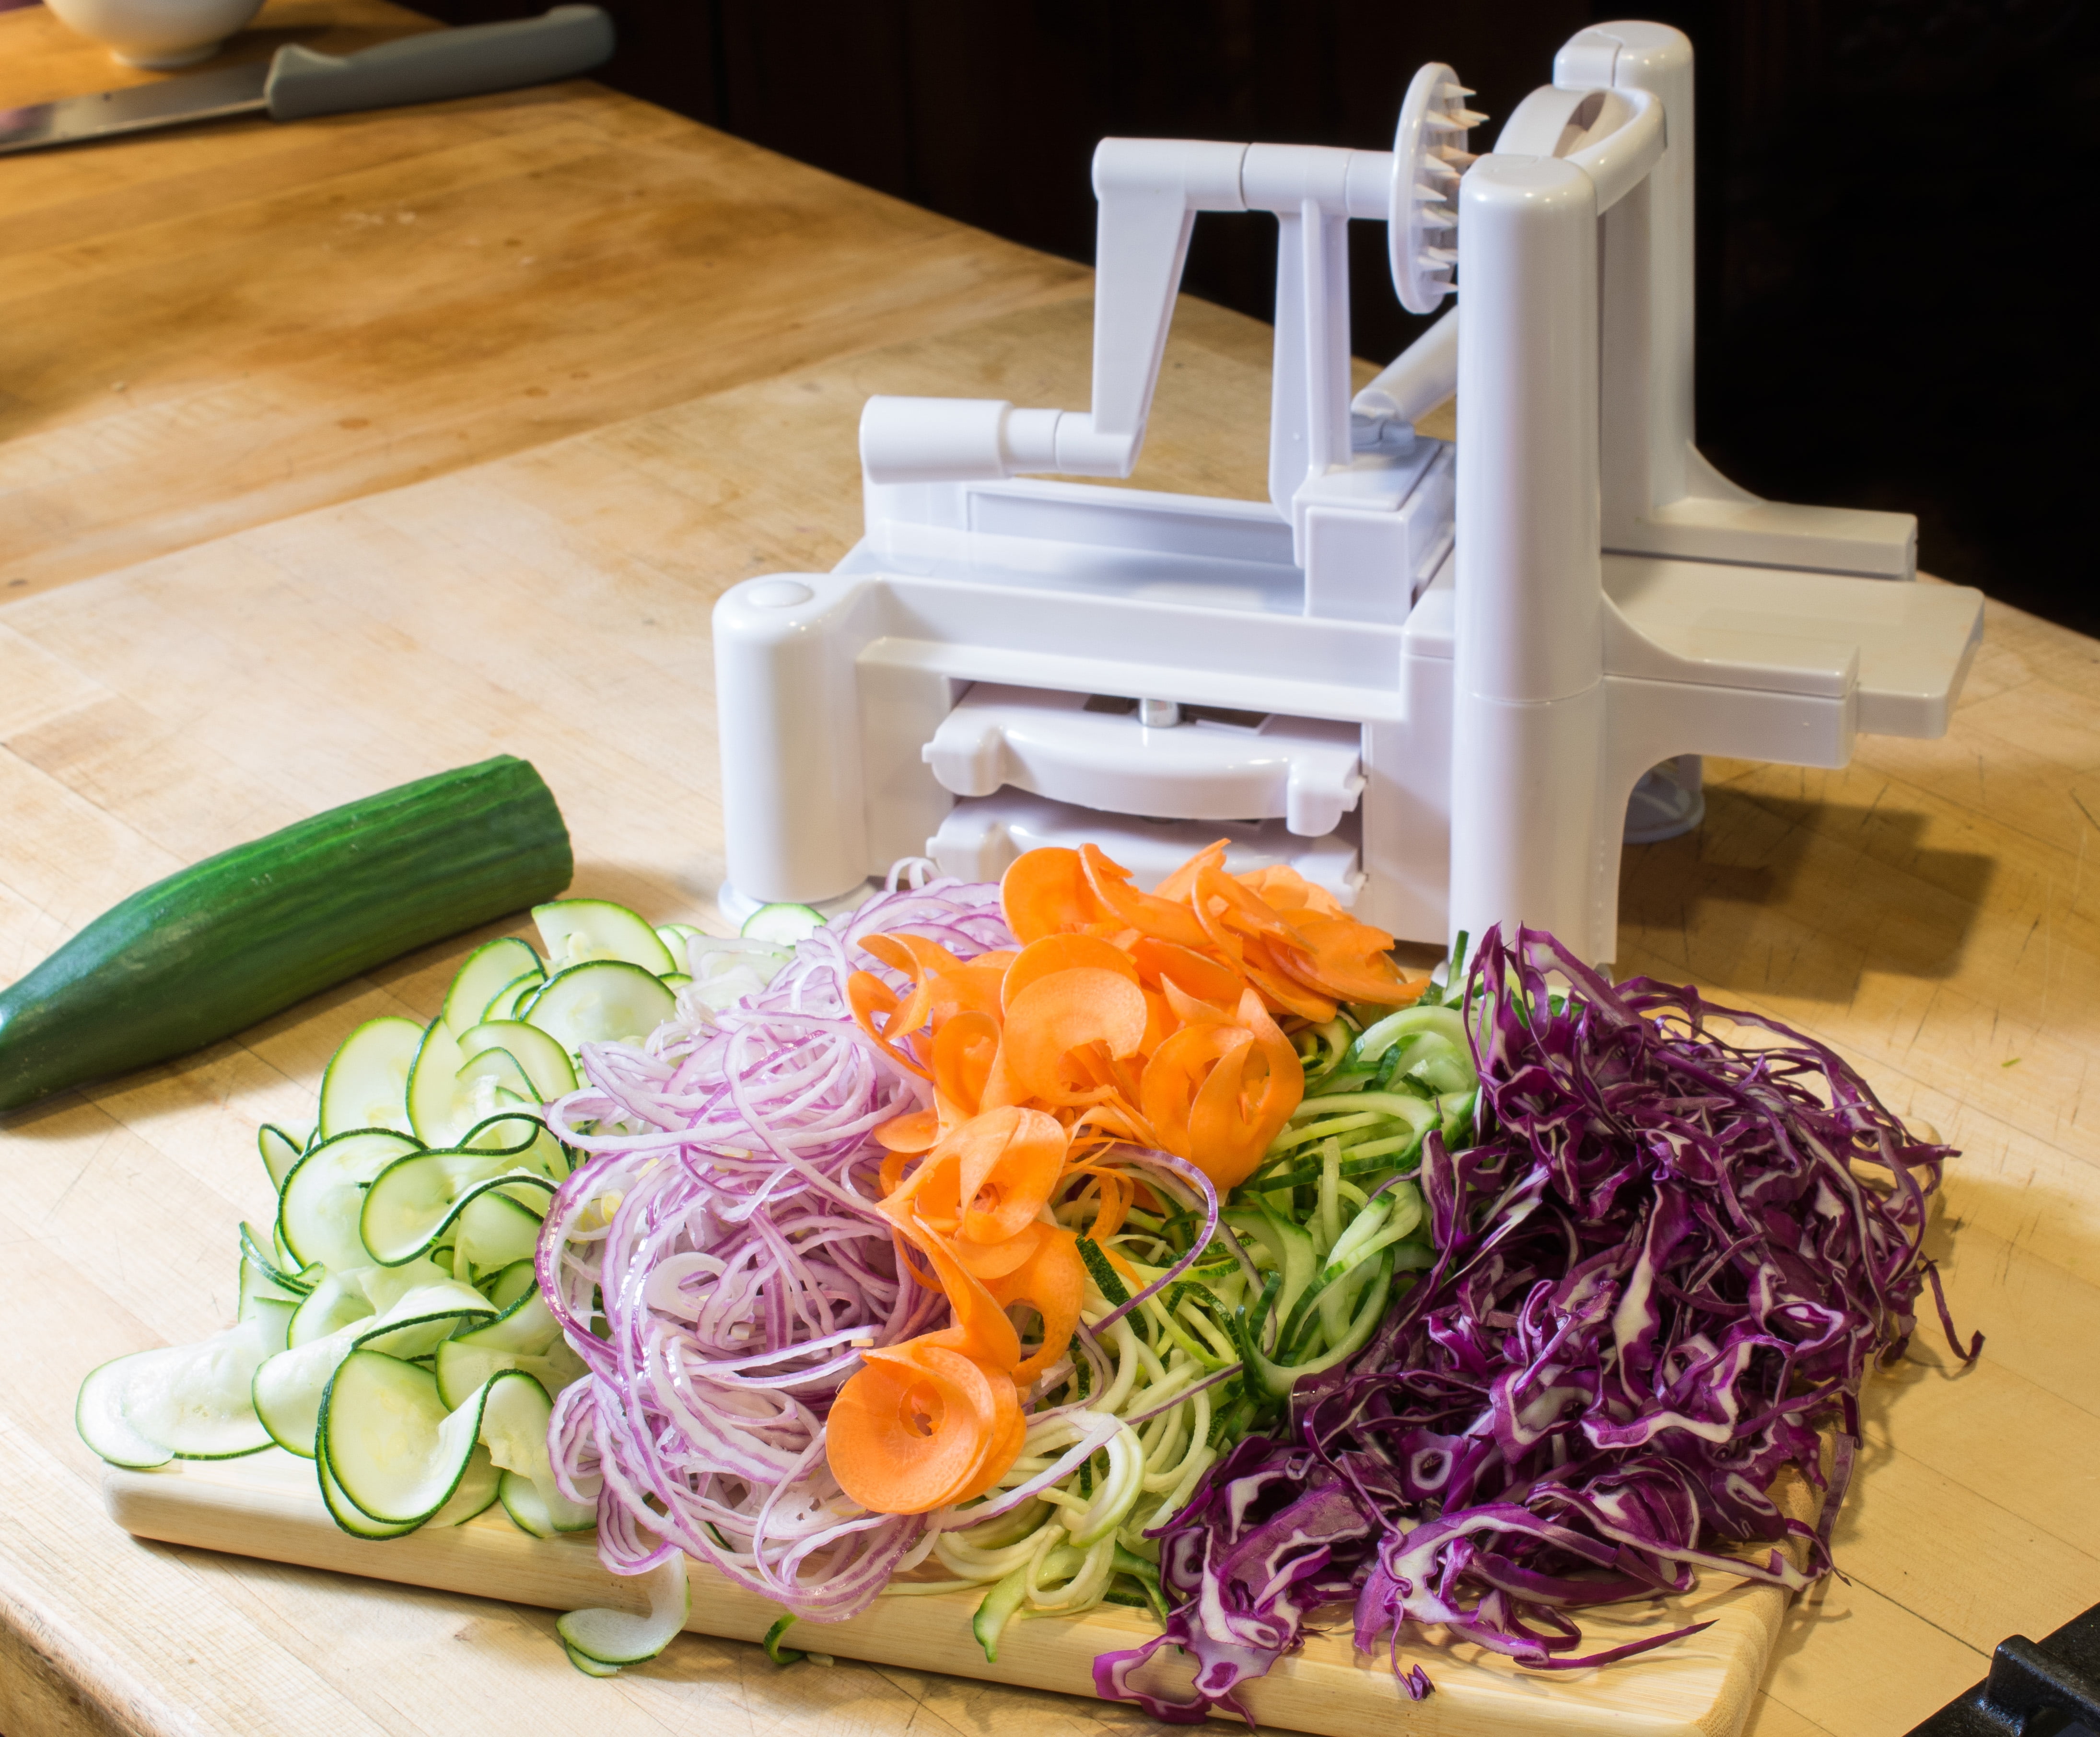 Helen's Asian Kitchen Spiral Vegetable Slicer - Shop Utensils & Gadgets at  H-E-B